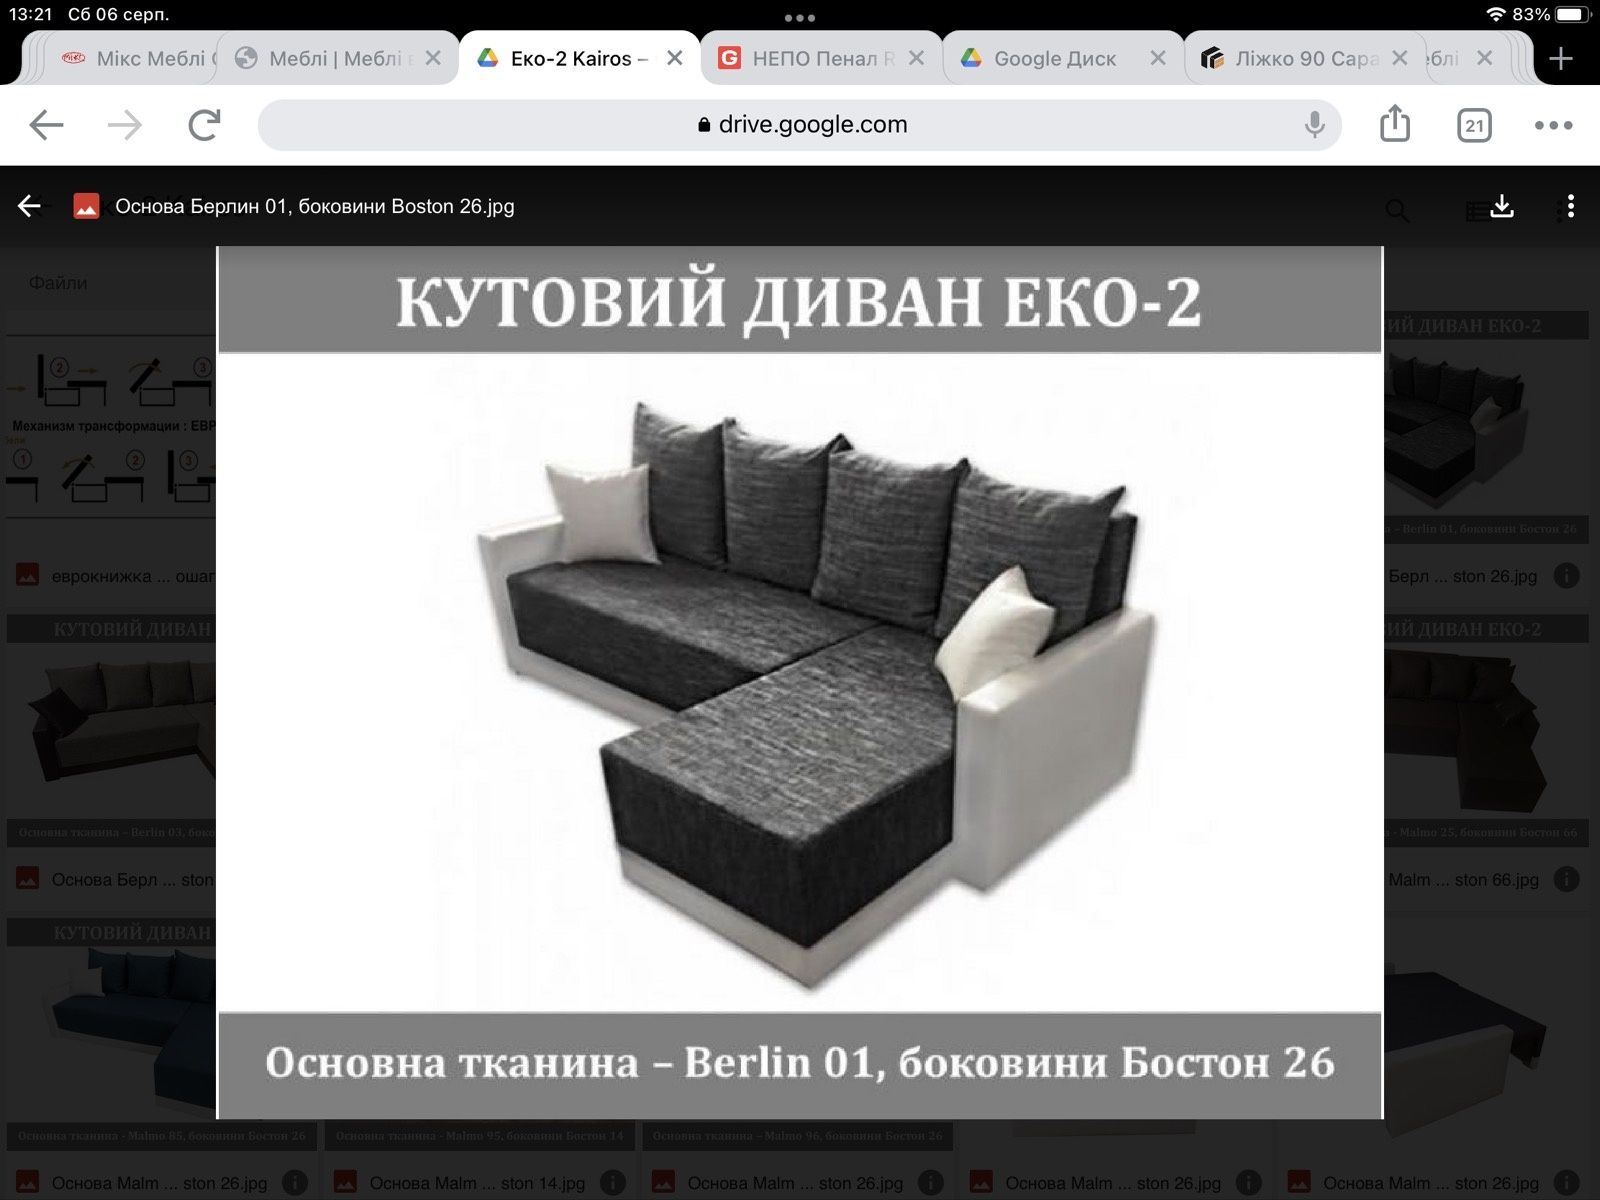 Кутовий диван Еко-2 в наявності